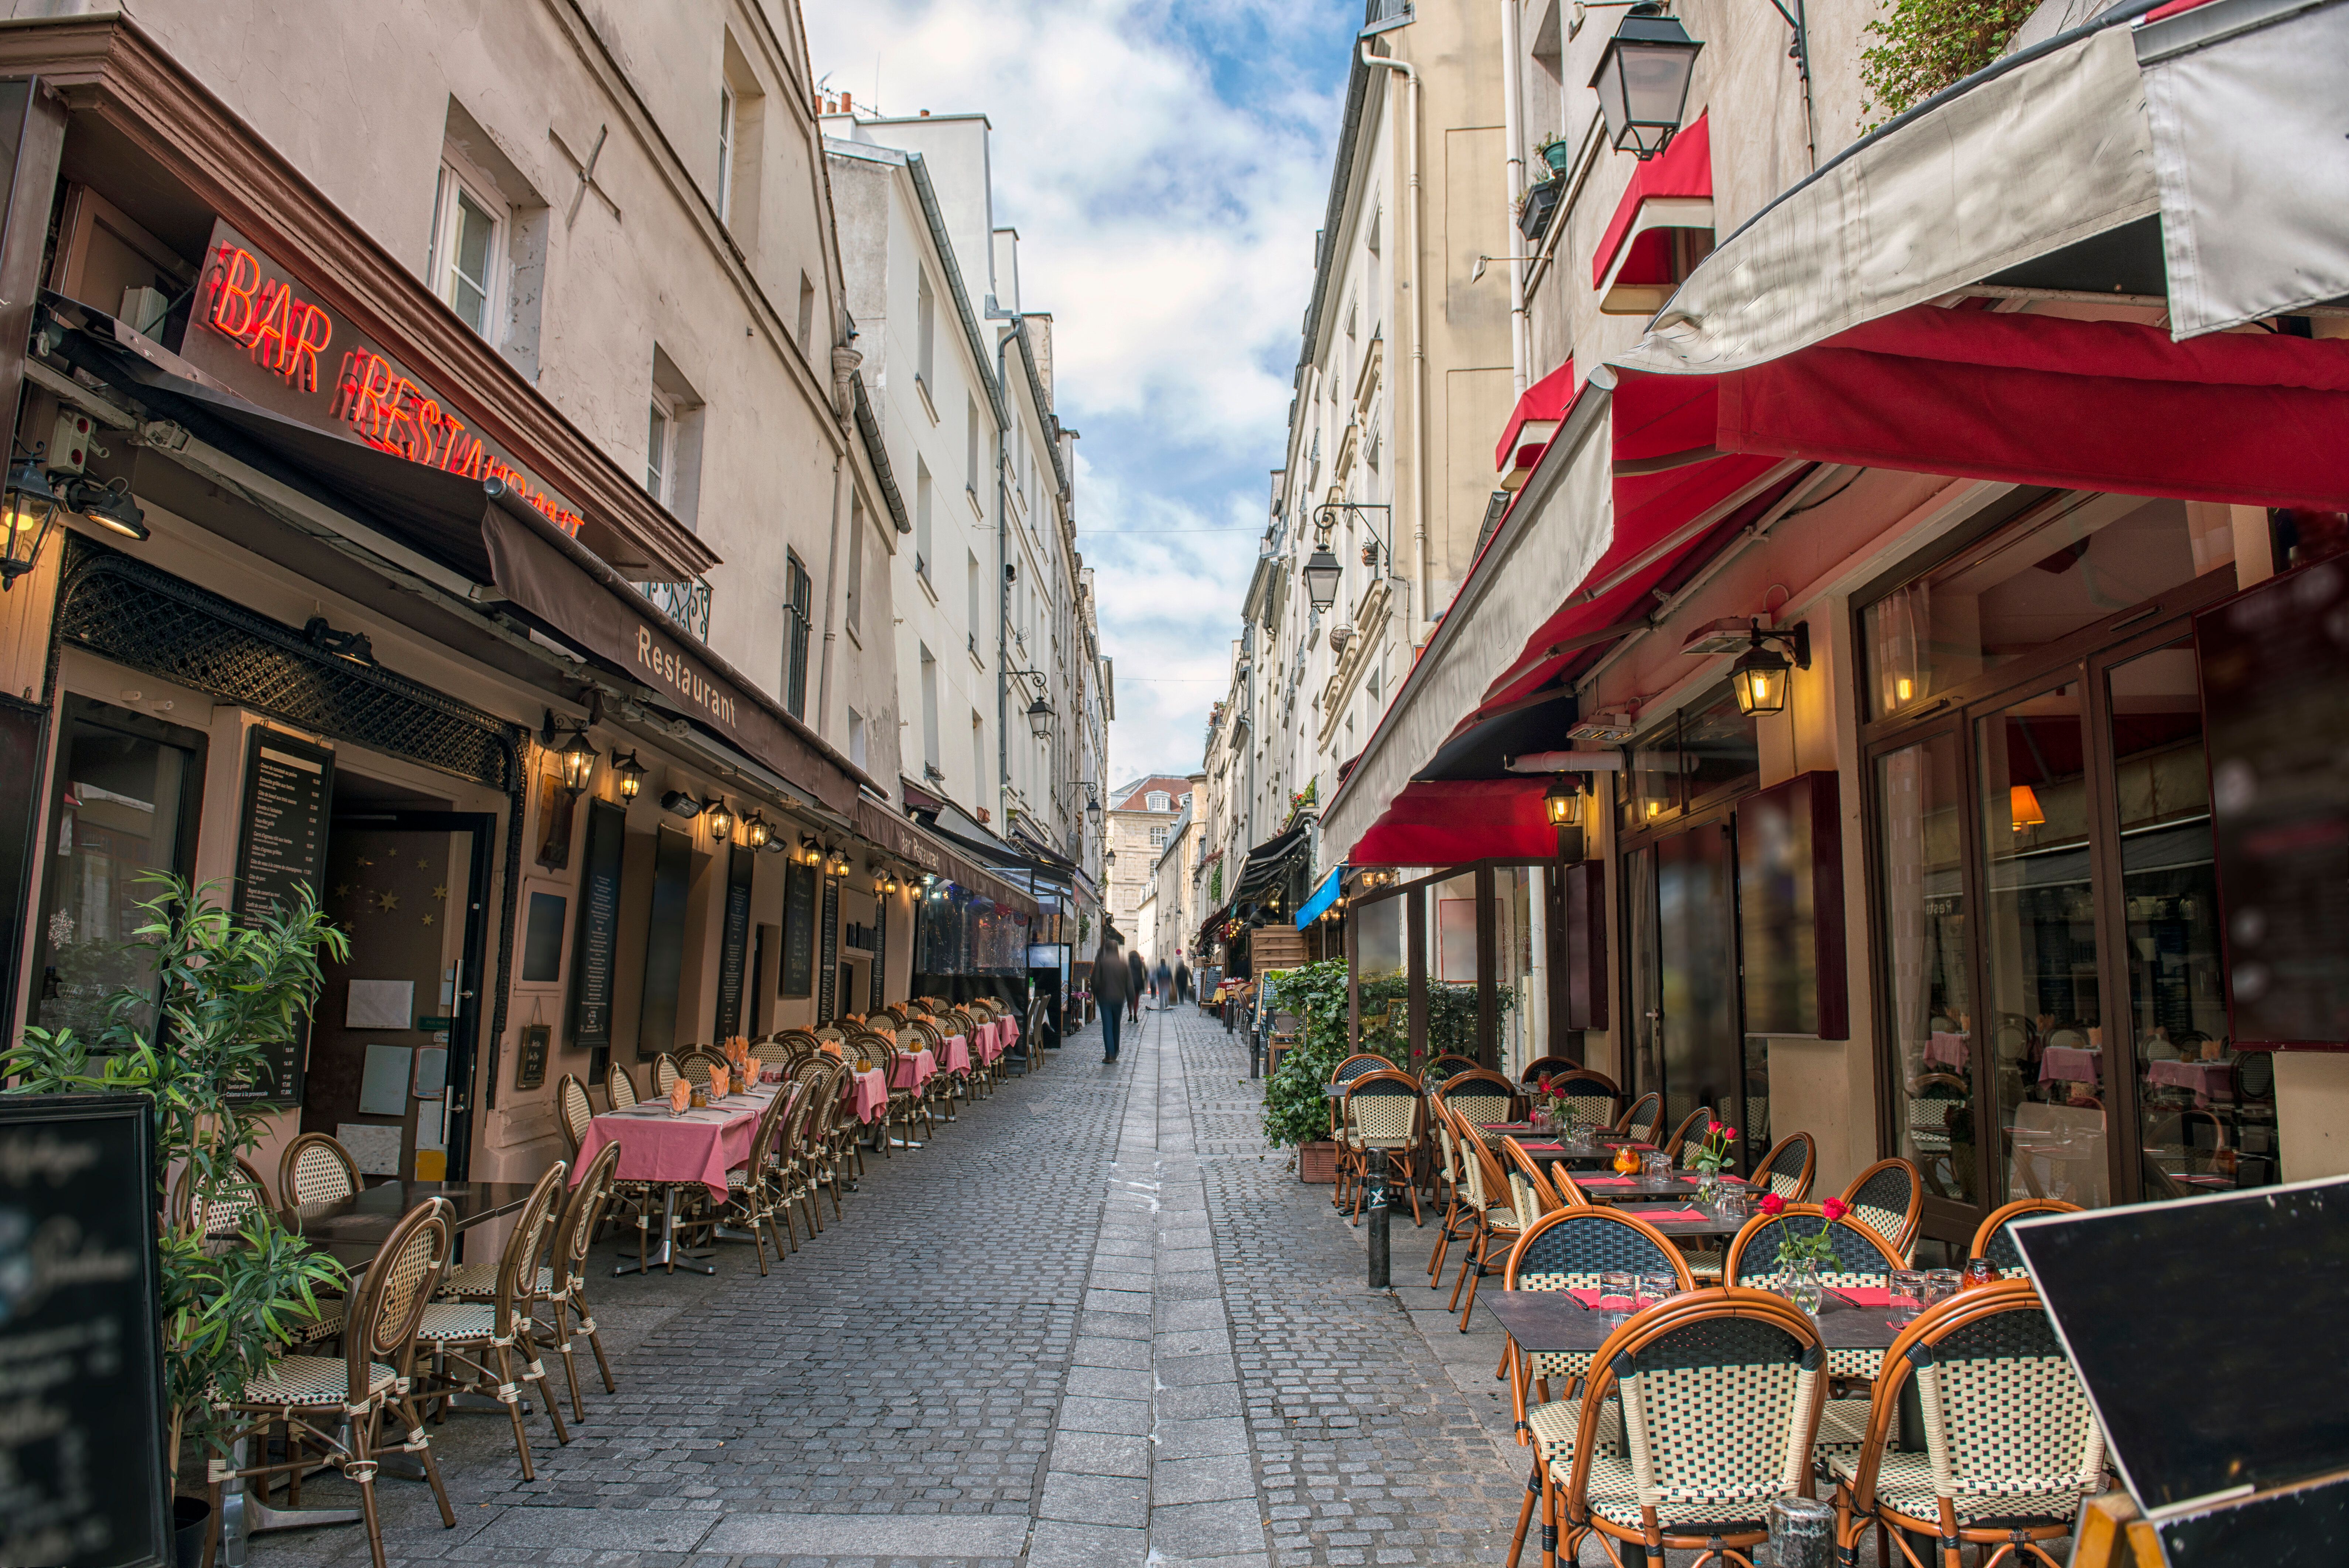 Les restaurateurs parisiens craignent de baisser le rideau face à la reprise épidémique...